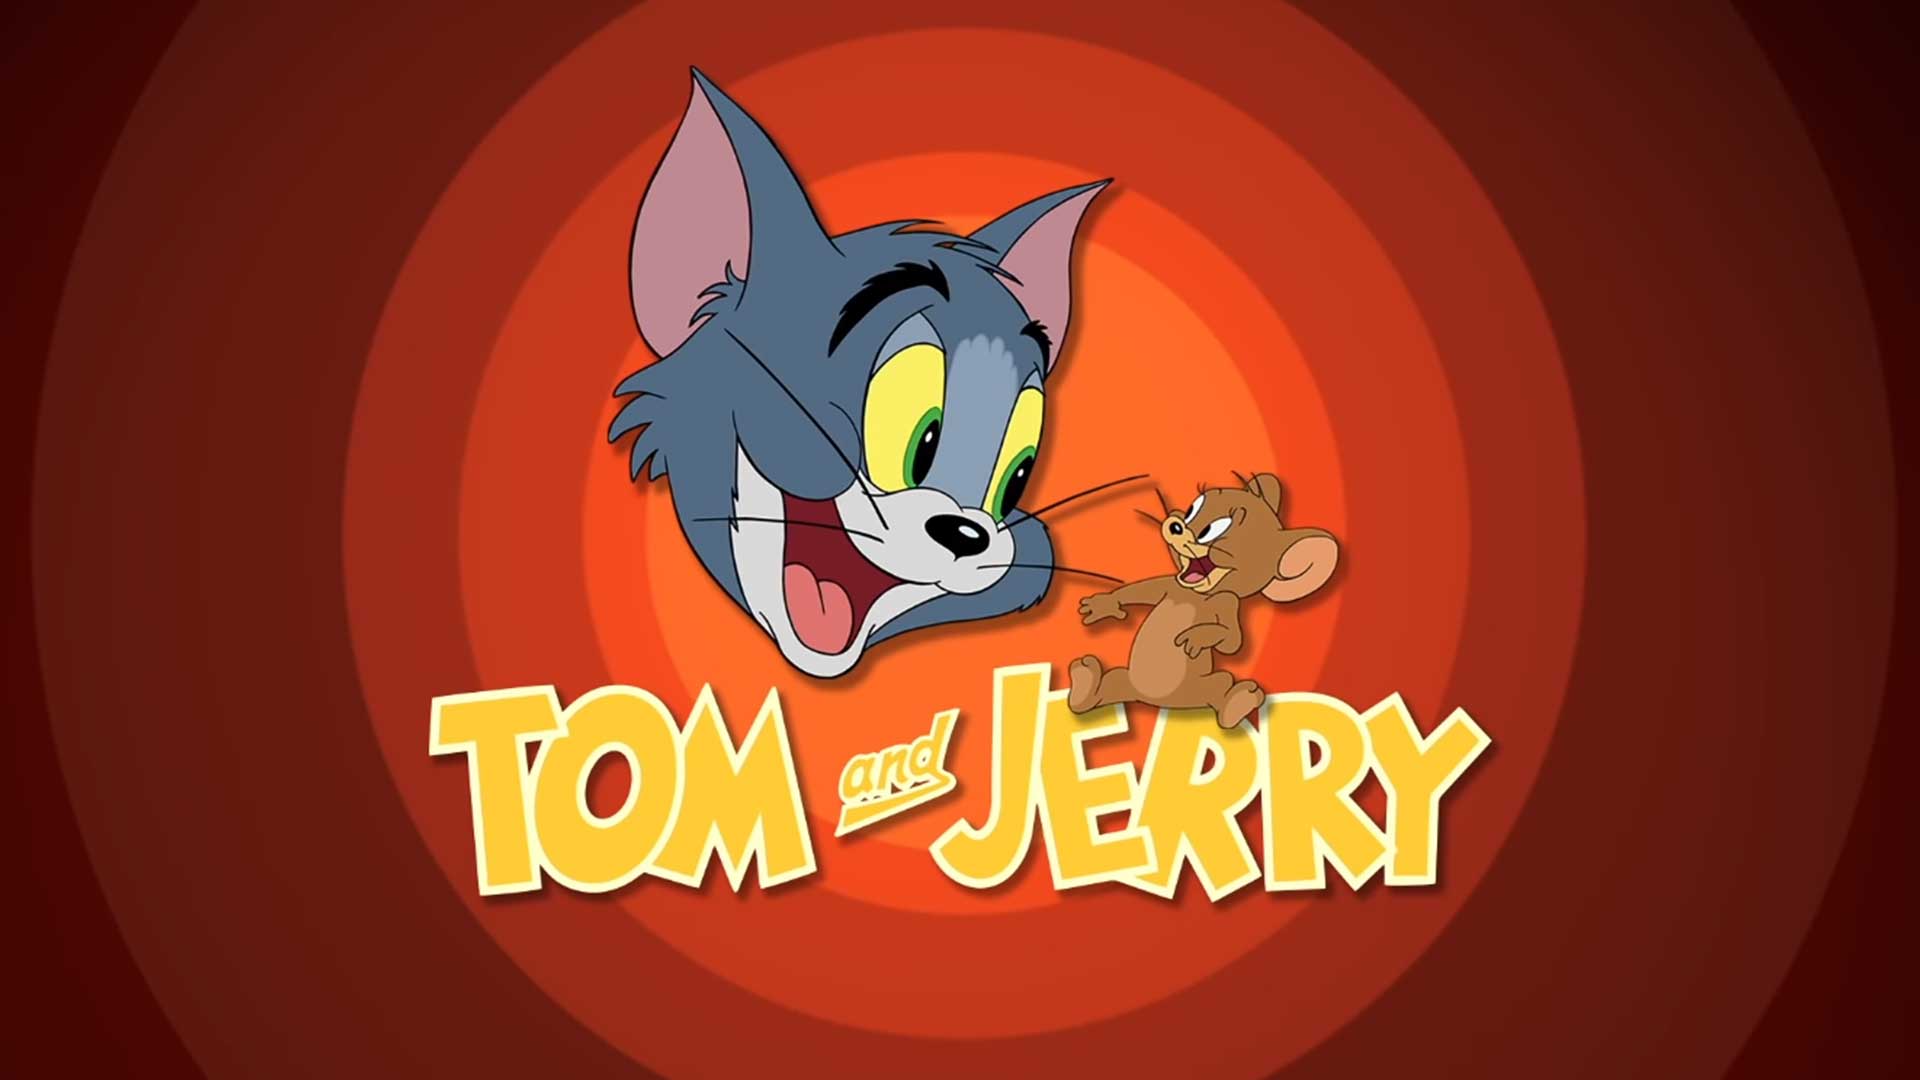 Том и Джерри – 1 серия «Кот получает пинка» / Tom and Jerry